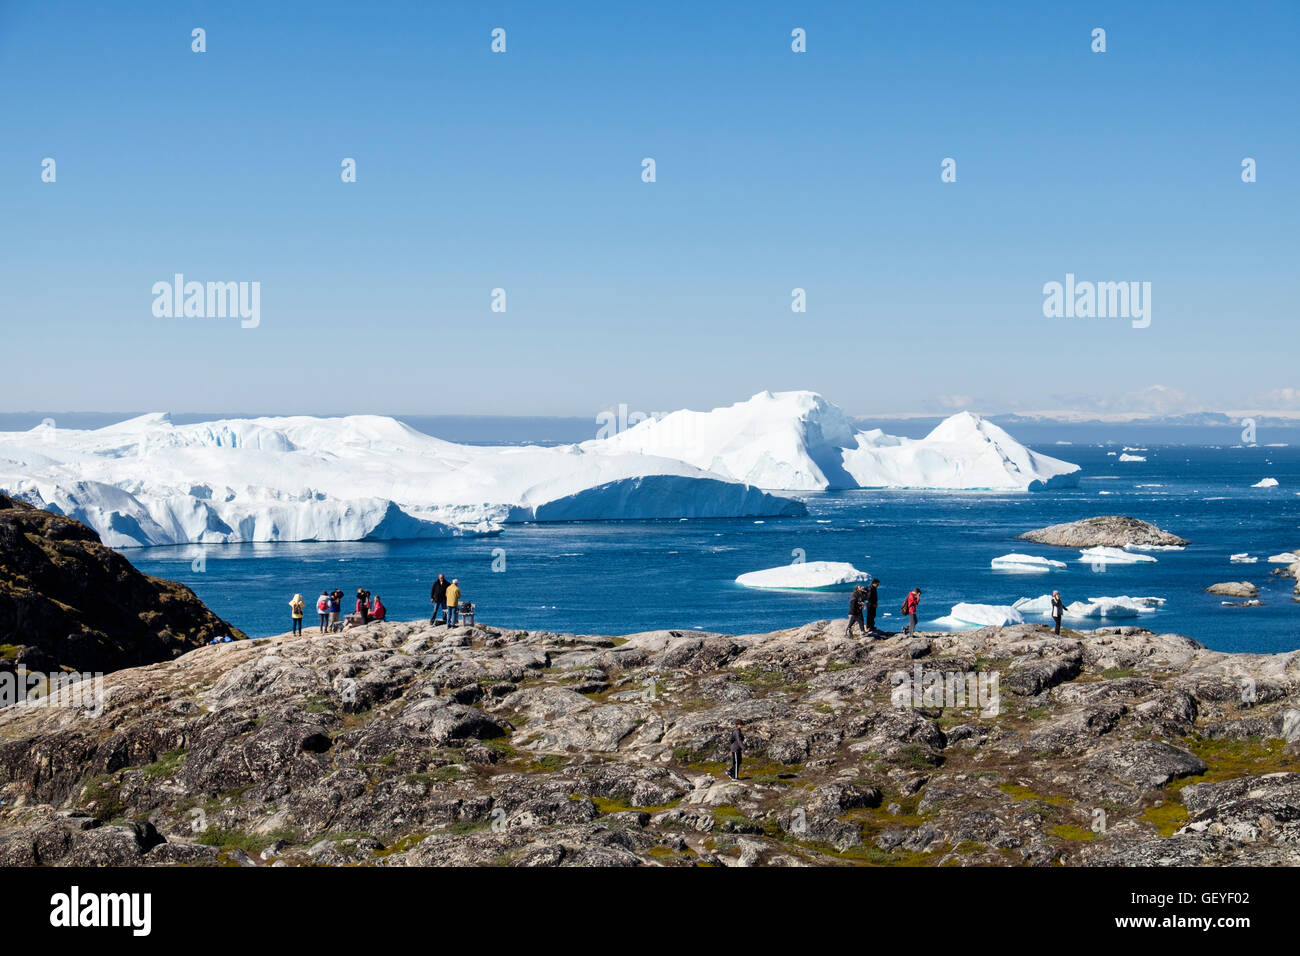 Les gens sur un sentier de randonnée à Nakkaavik vue surplombant la baie de Disko avec les icebergs d'Ilulissat au large. Groenland Ilulissat Banque D'Images